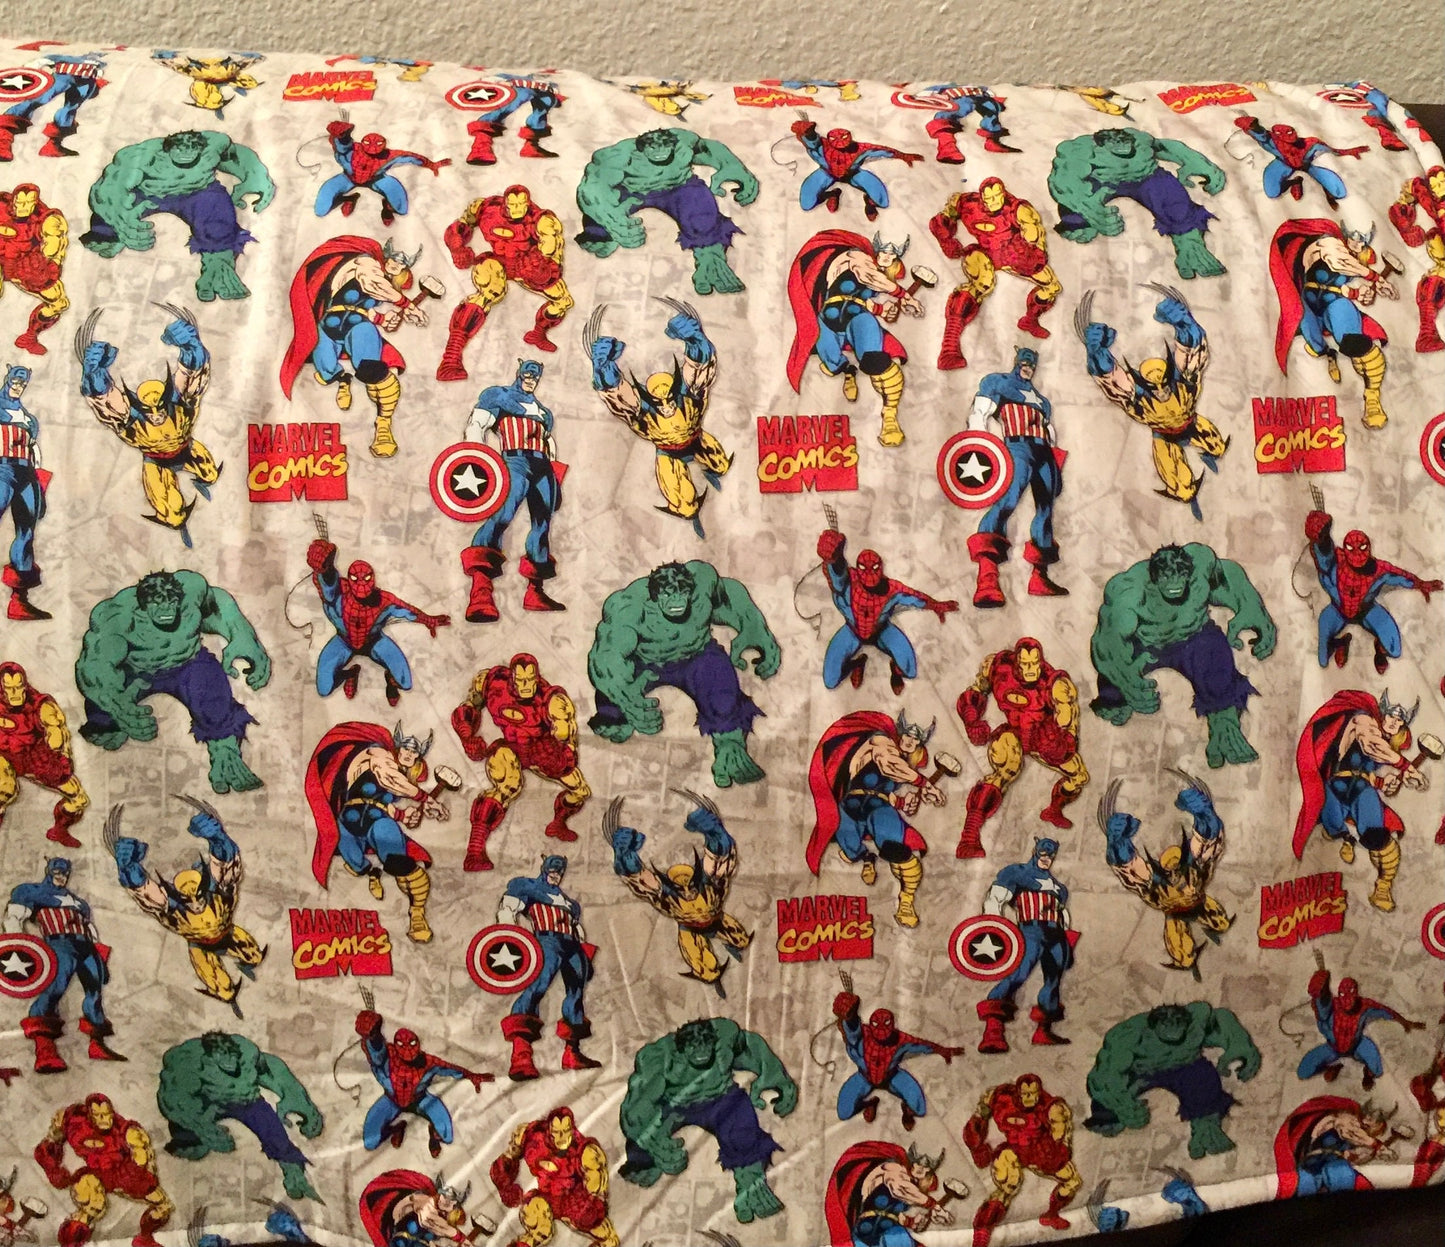 Designer Avengers Marvel Comics Blanket